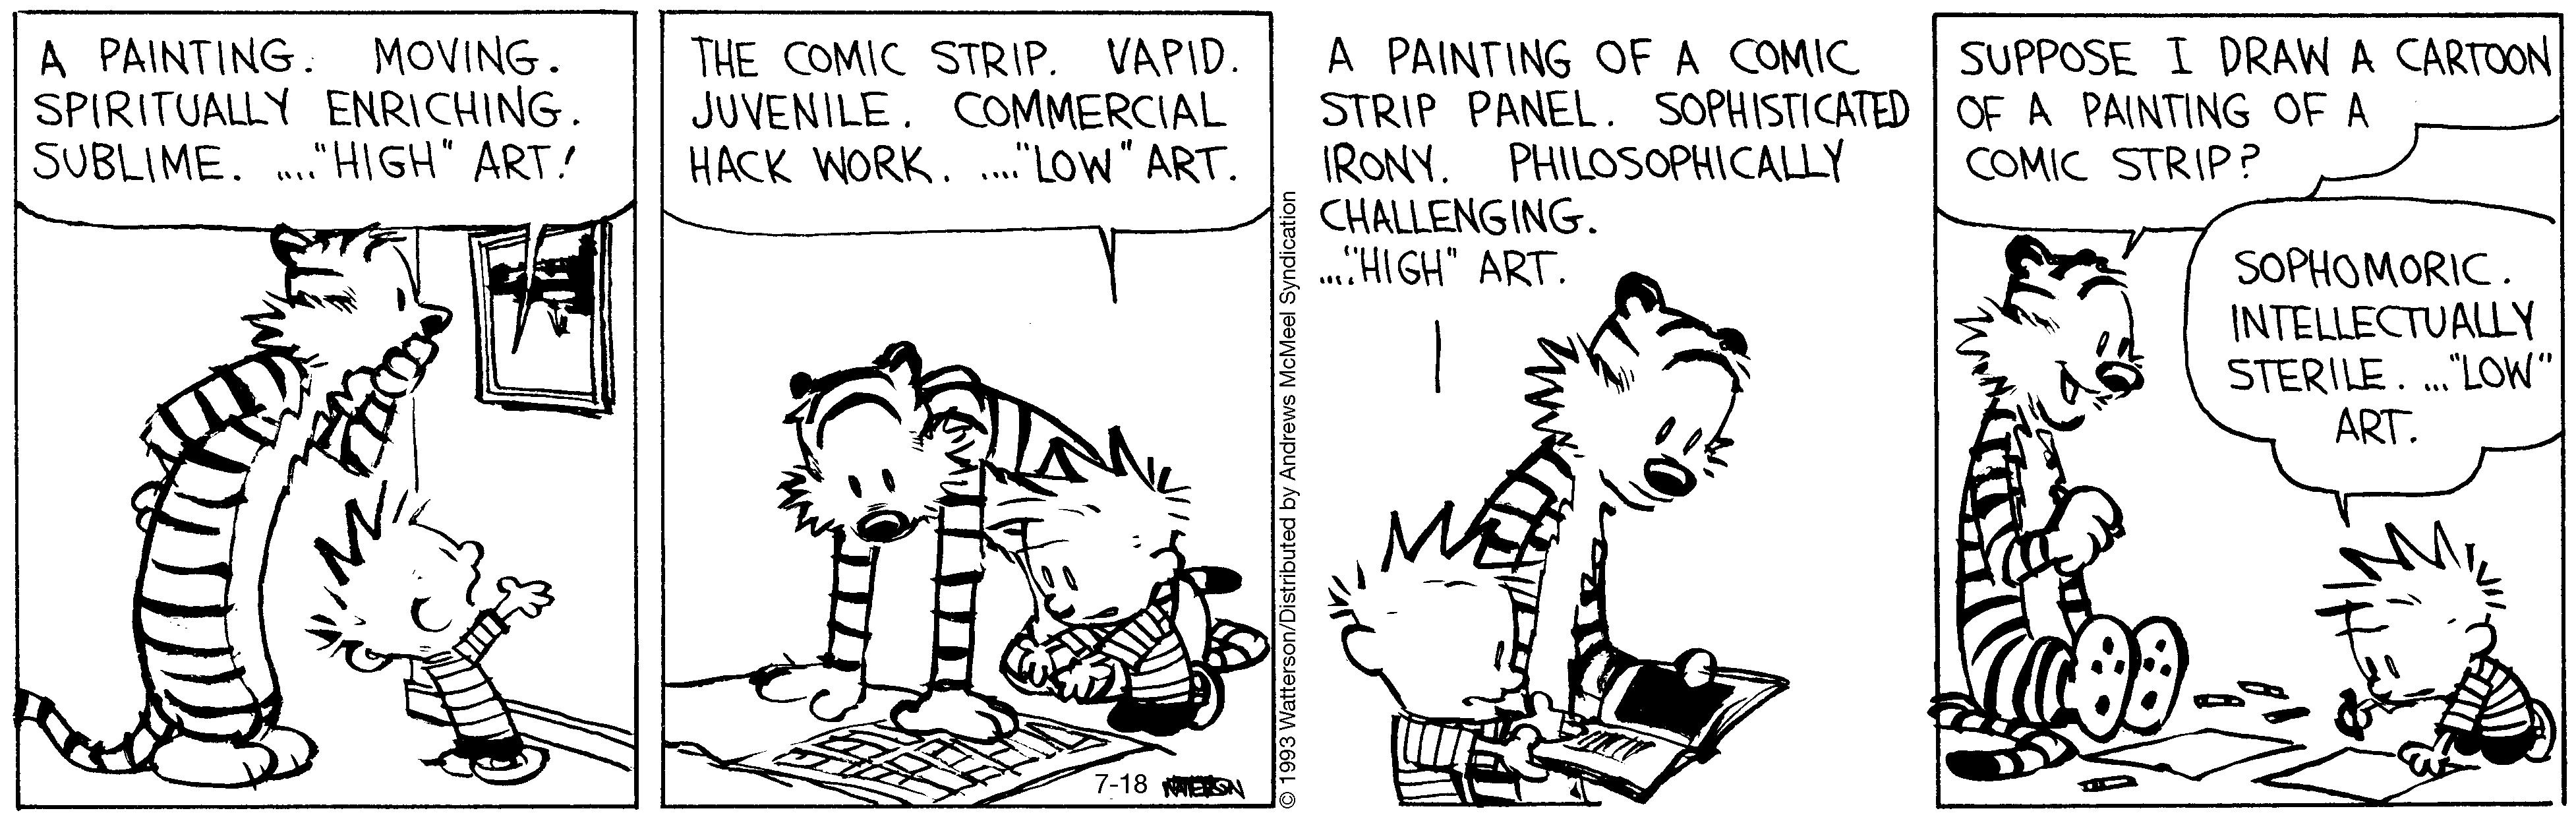 Comic strip. Комикс Calvin and Hobbes. Comic strip карикатура. Стрип комикс.